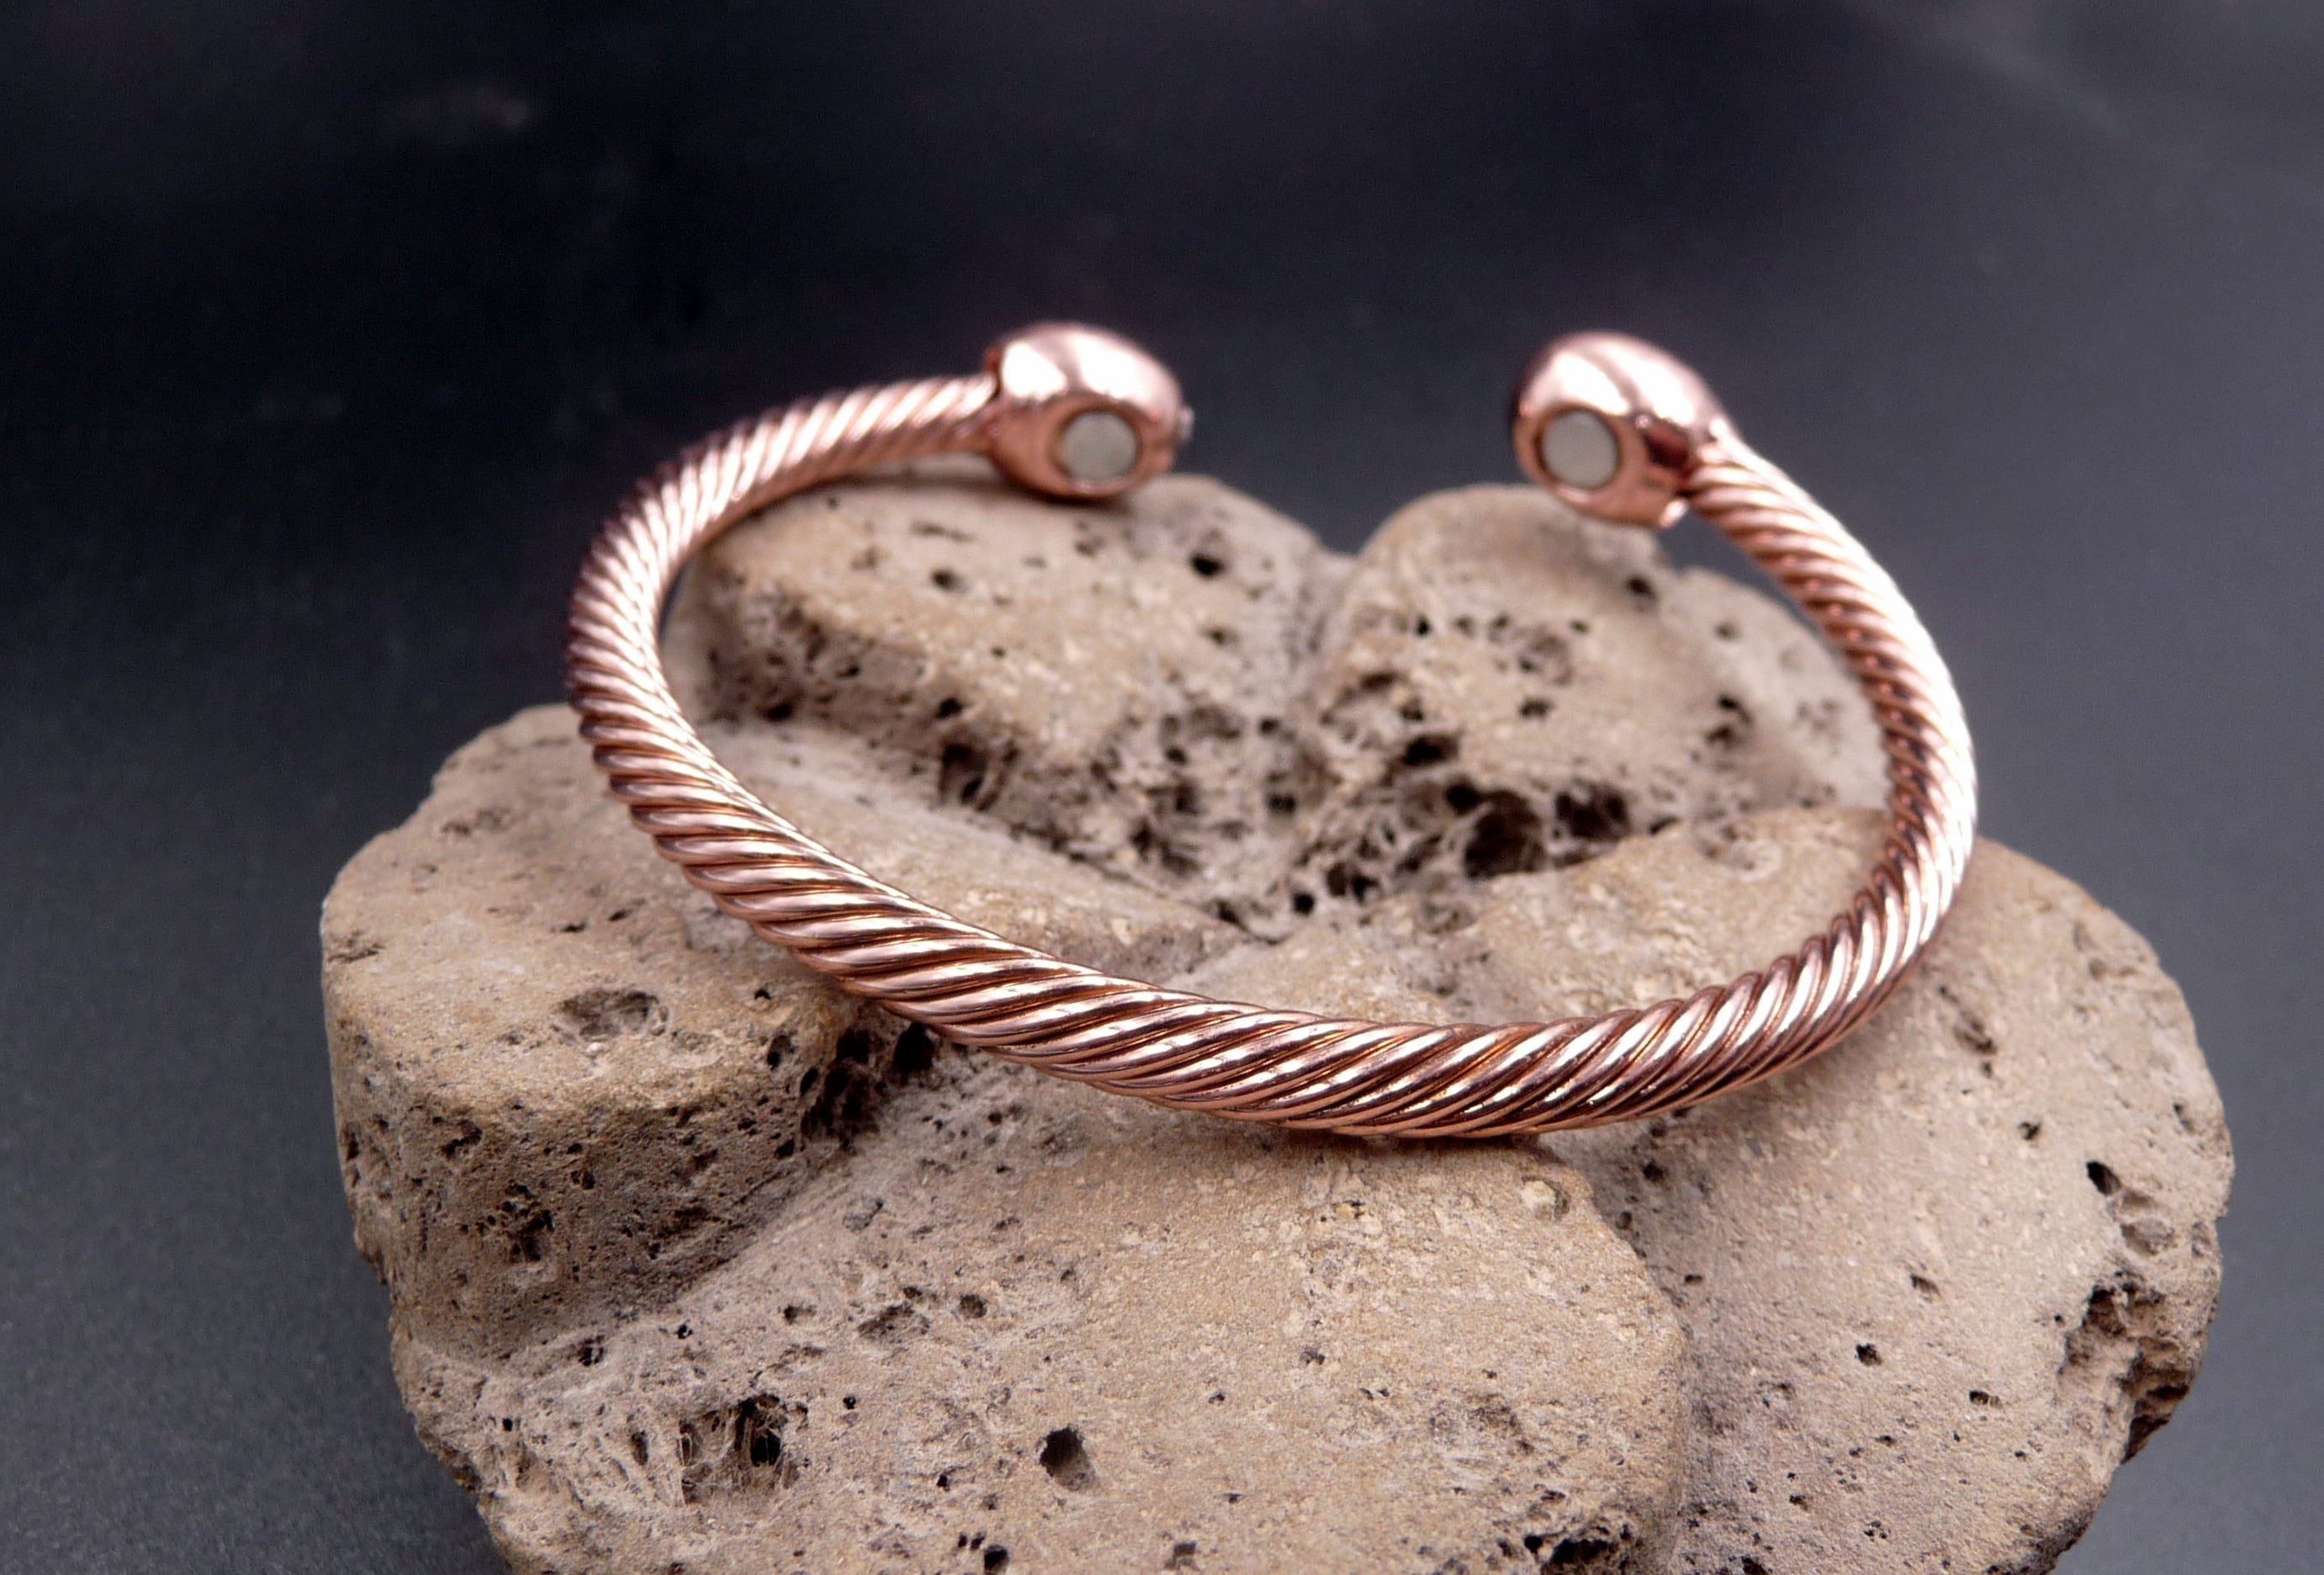 Bracelet Magnétique Kapa en cuivre